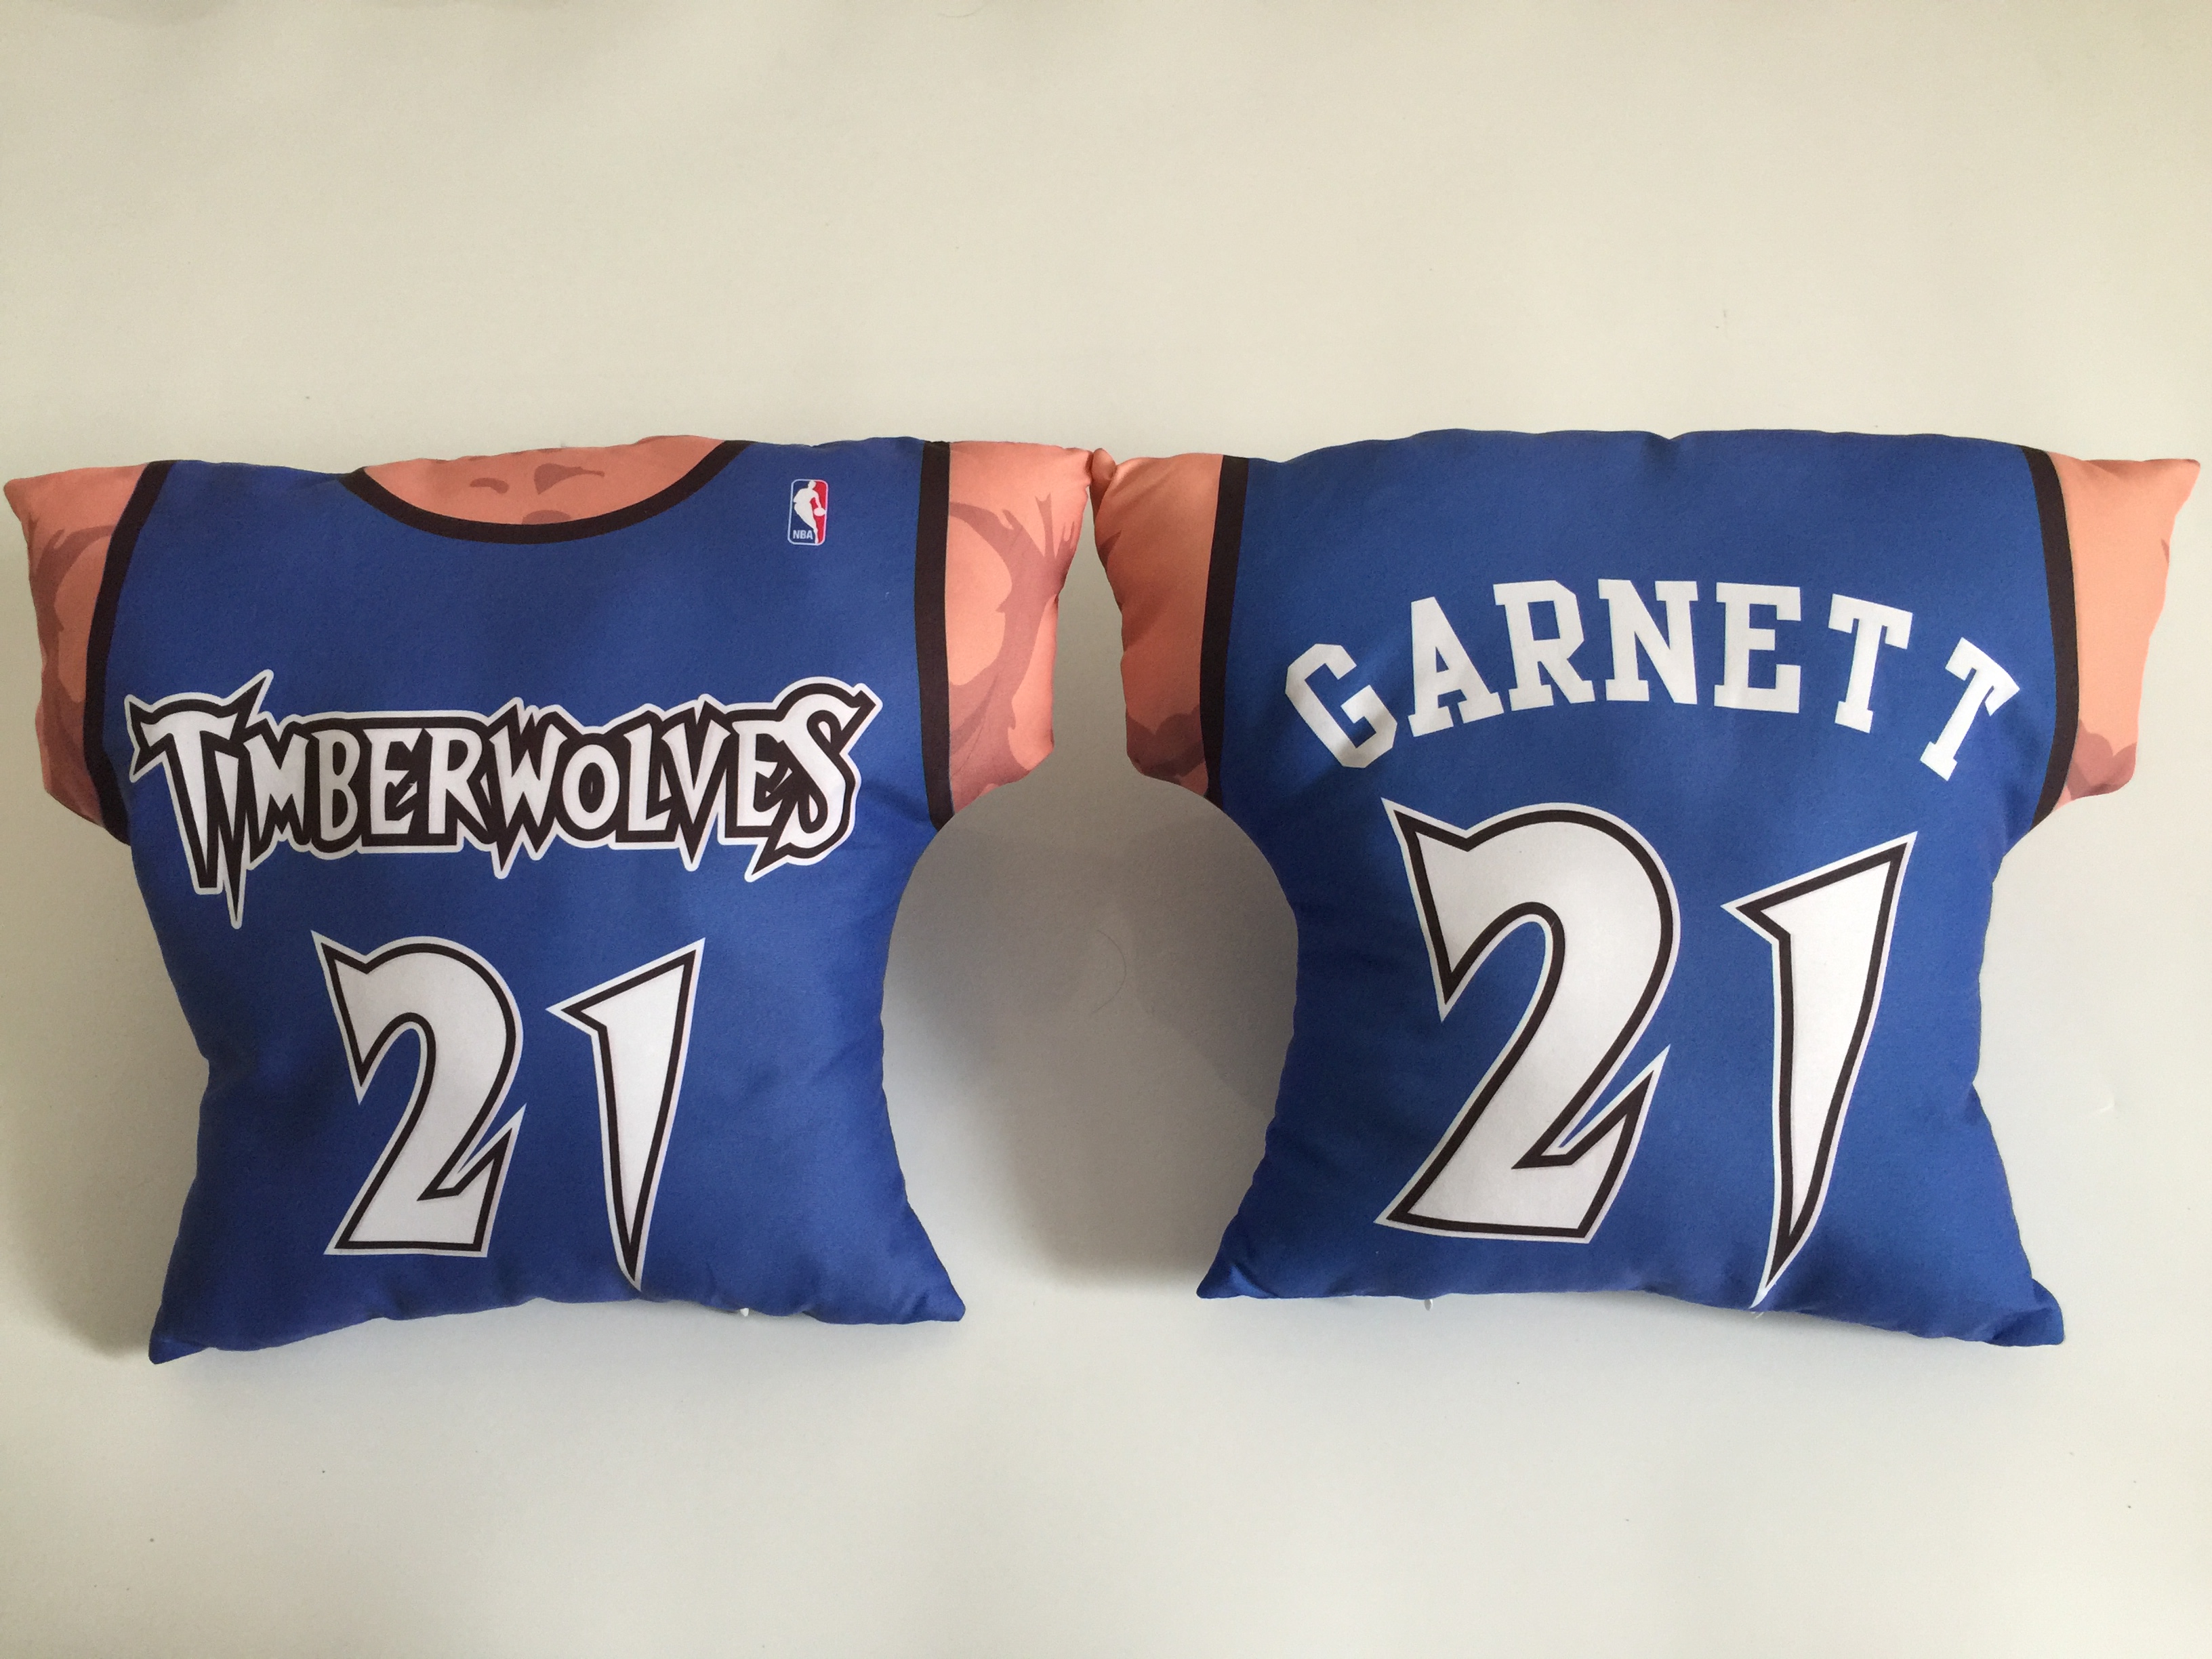 Minnesota Timberwolves 21 Kevin Garnett Blue NBA Pillow